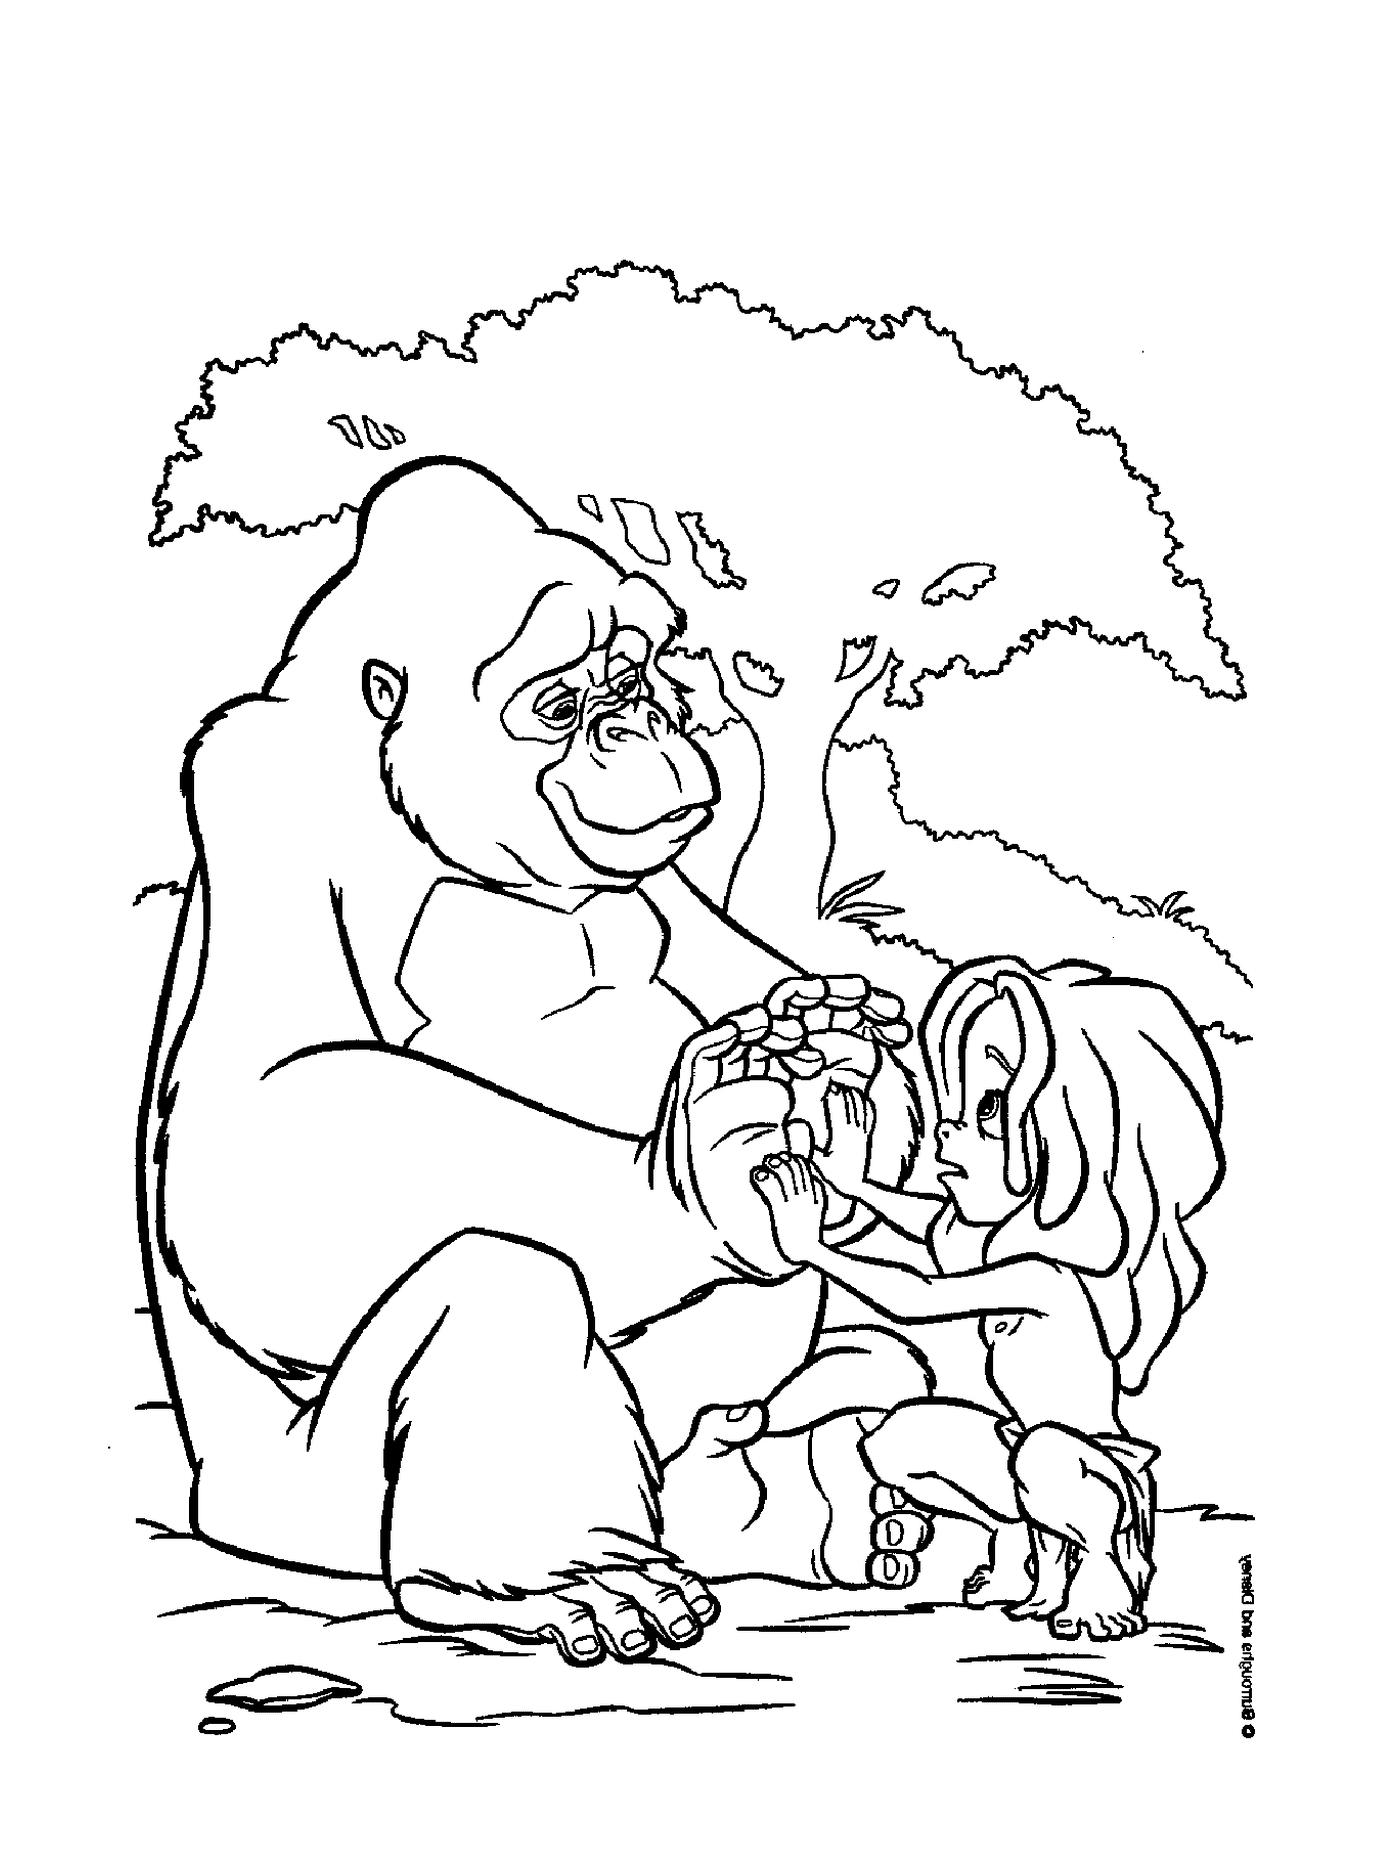  Erwachsene und Kind spielen mit einem Gorilla 